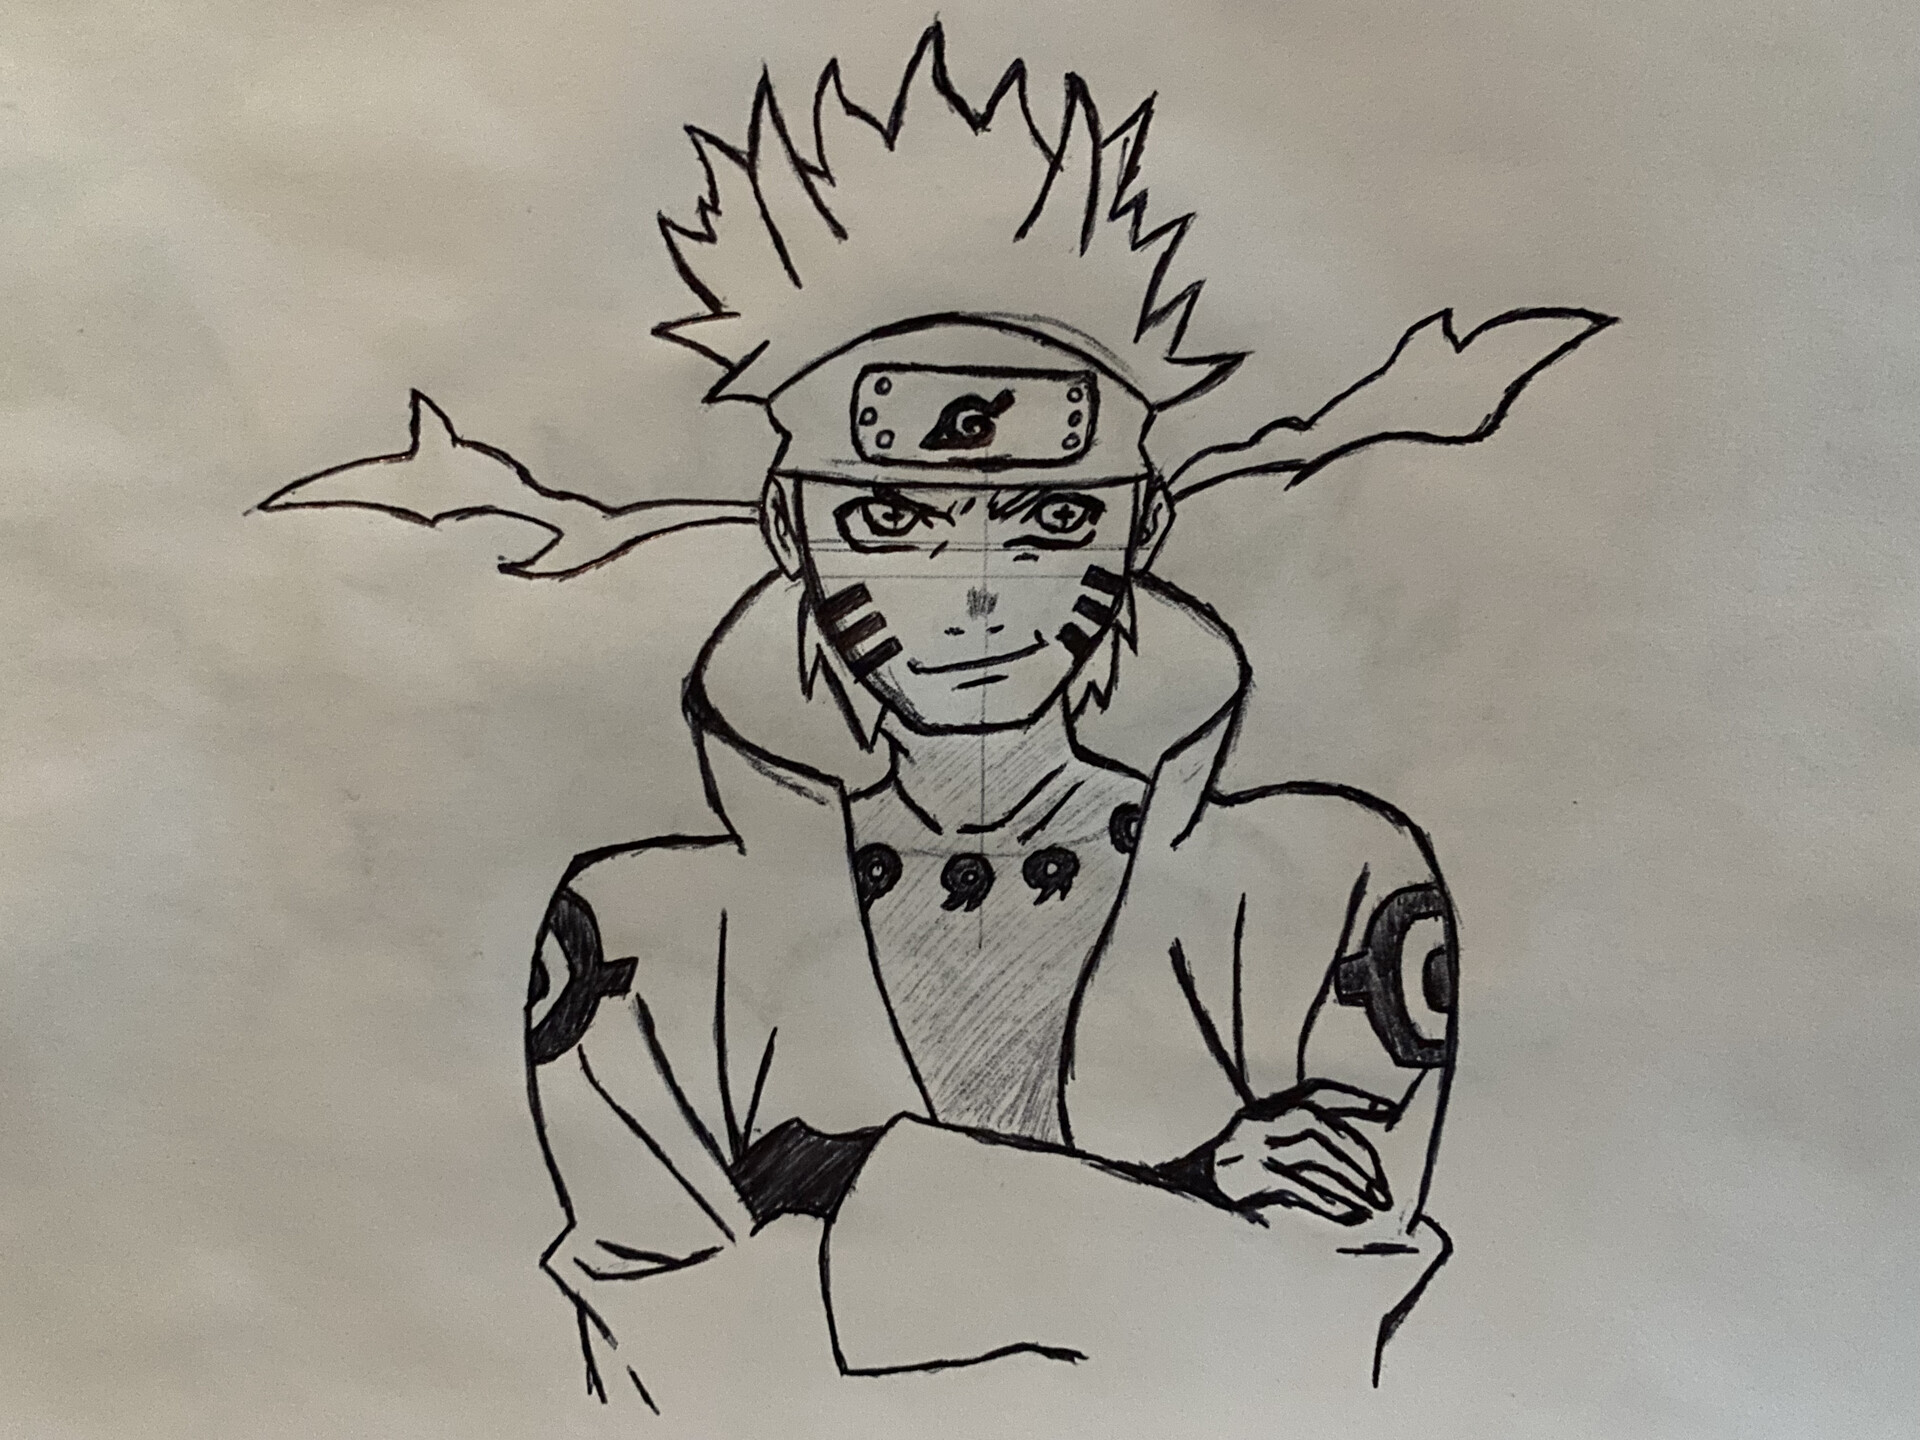 Bạn là fan của Naruto và muốn thử sức với vẽ tranh anime? Không có gì tiếp cận hơn với nguồn cảm hứng này. Những hình ảnh liên quan sẽ giúp bạn tìm hiểu thêm về cách vẽ tranh anime Naruto, từ hình dáng đến màu sắc. Hãy thử sức và cùng tái hiện lại những thế giới đầy kỳ ảo này nhé!